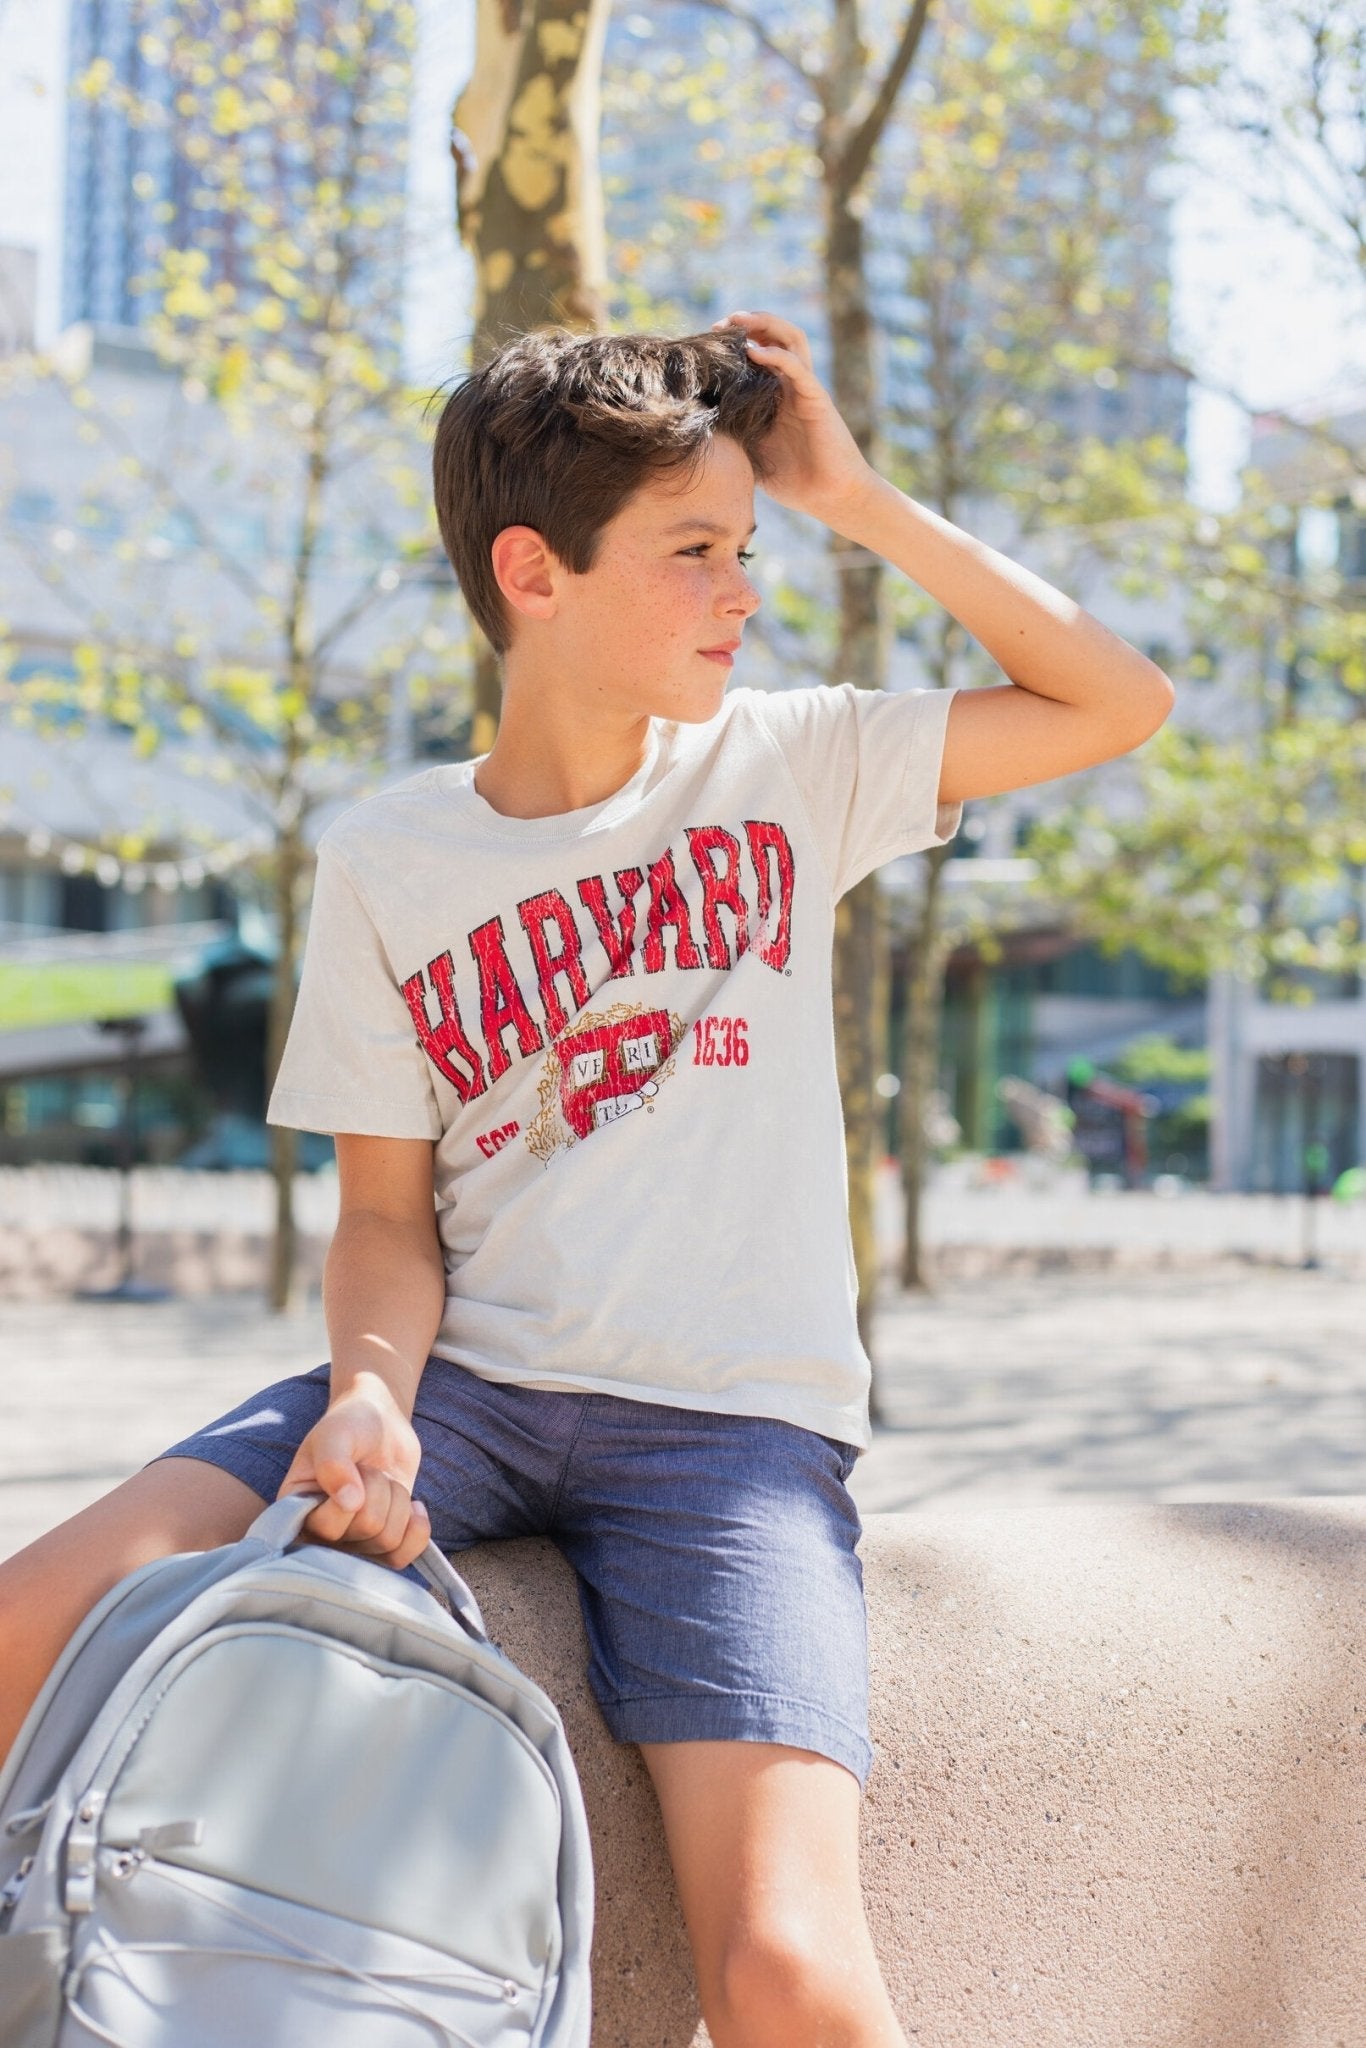 Harvard University 2 Pack Graphic T-Shirts - imagikids